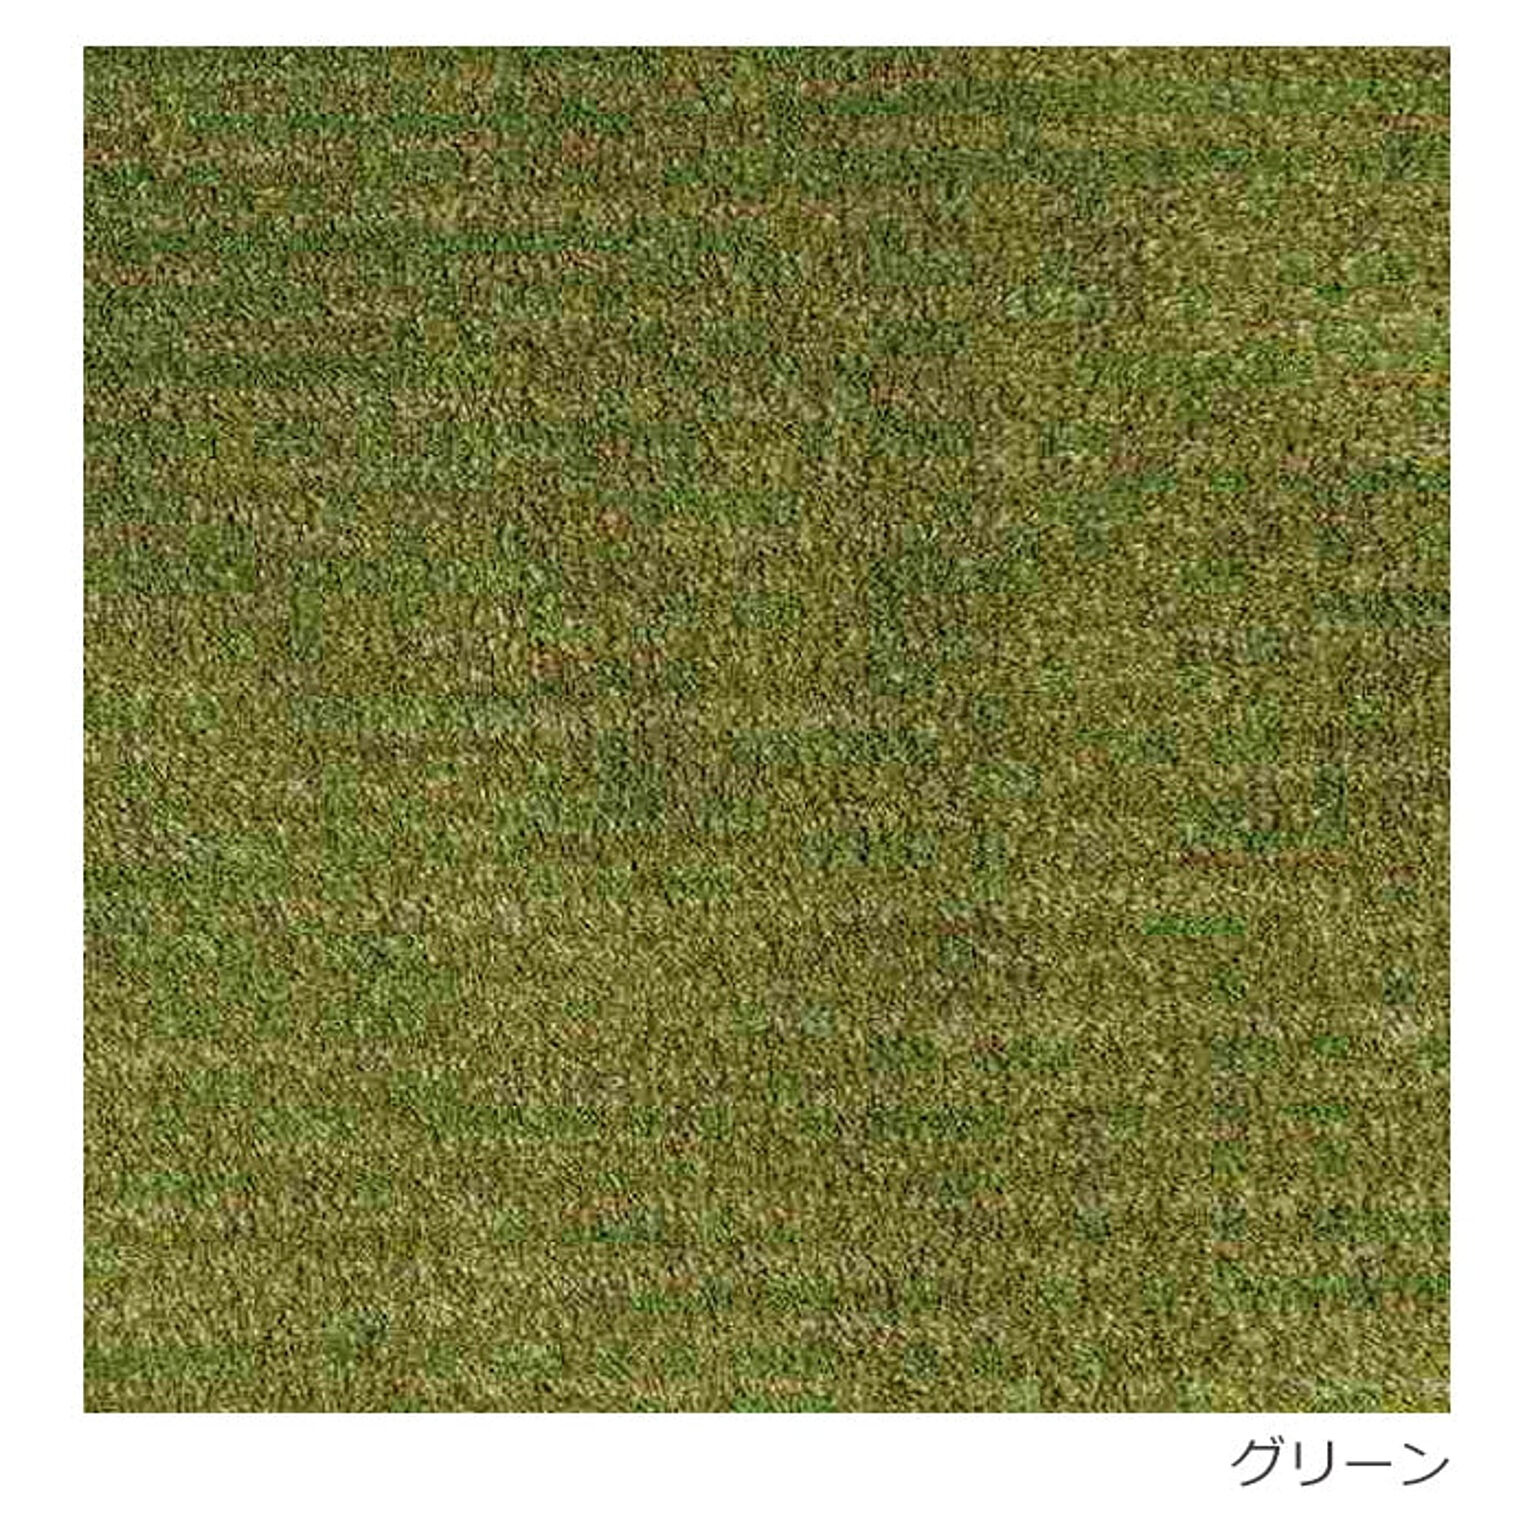 ラグ ラグマット 日本製 絨毯 Prevell プレーベル ロブ 約140×200cm アクリル シンプル アイボリー ブラウン レッド グリーン 引っ越し 新生活